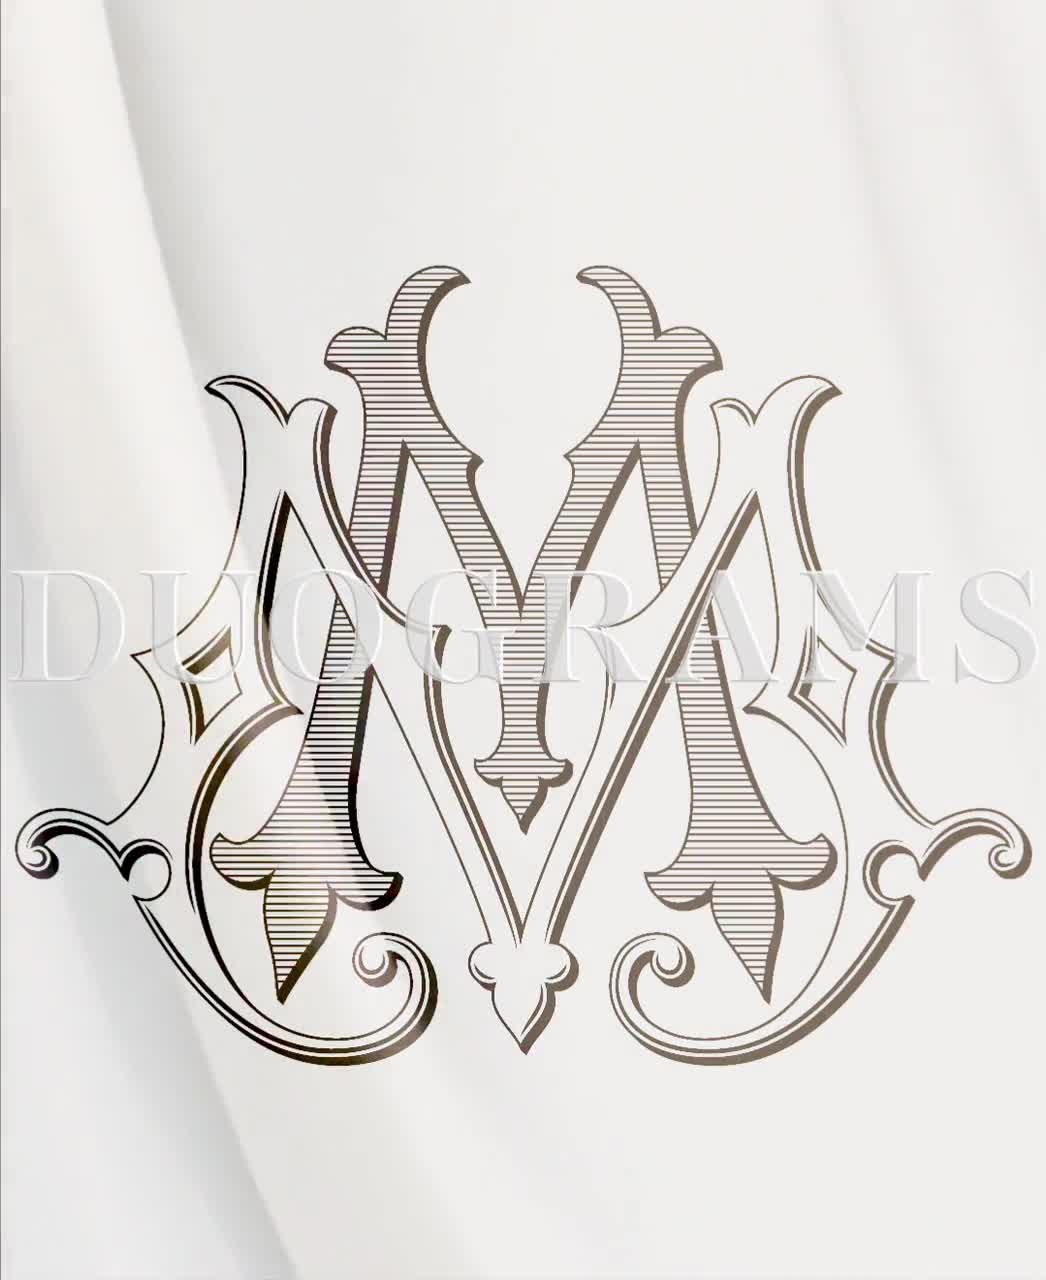 mm, mm, monogram logo. Calligraphic signature icon. Wedding Logo